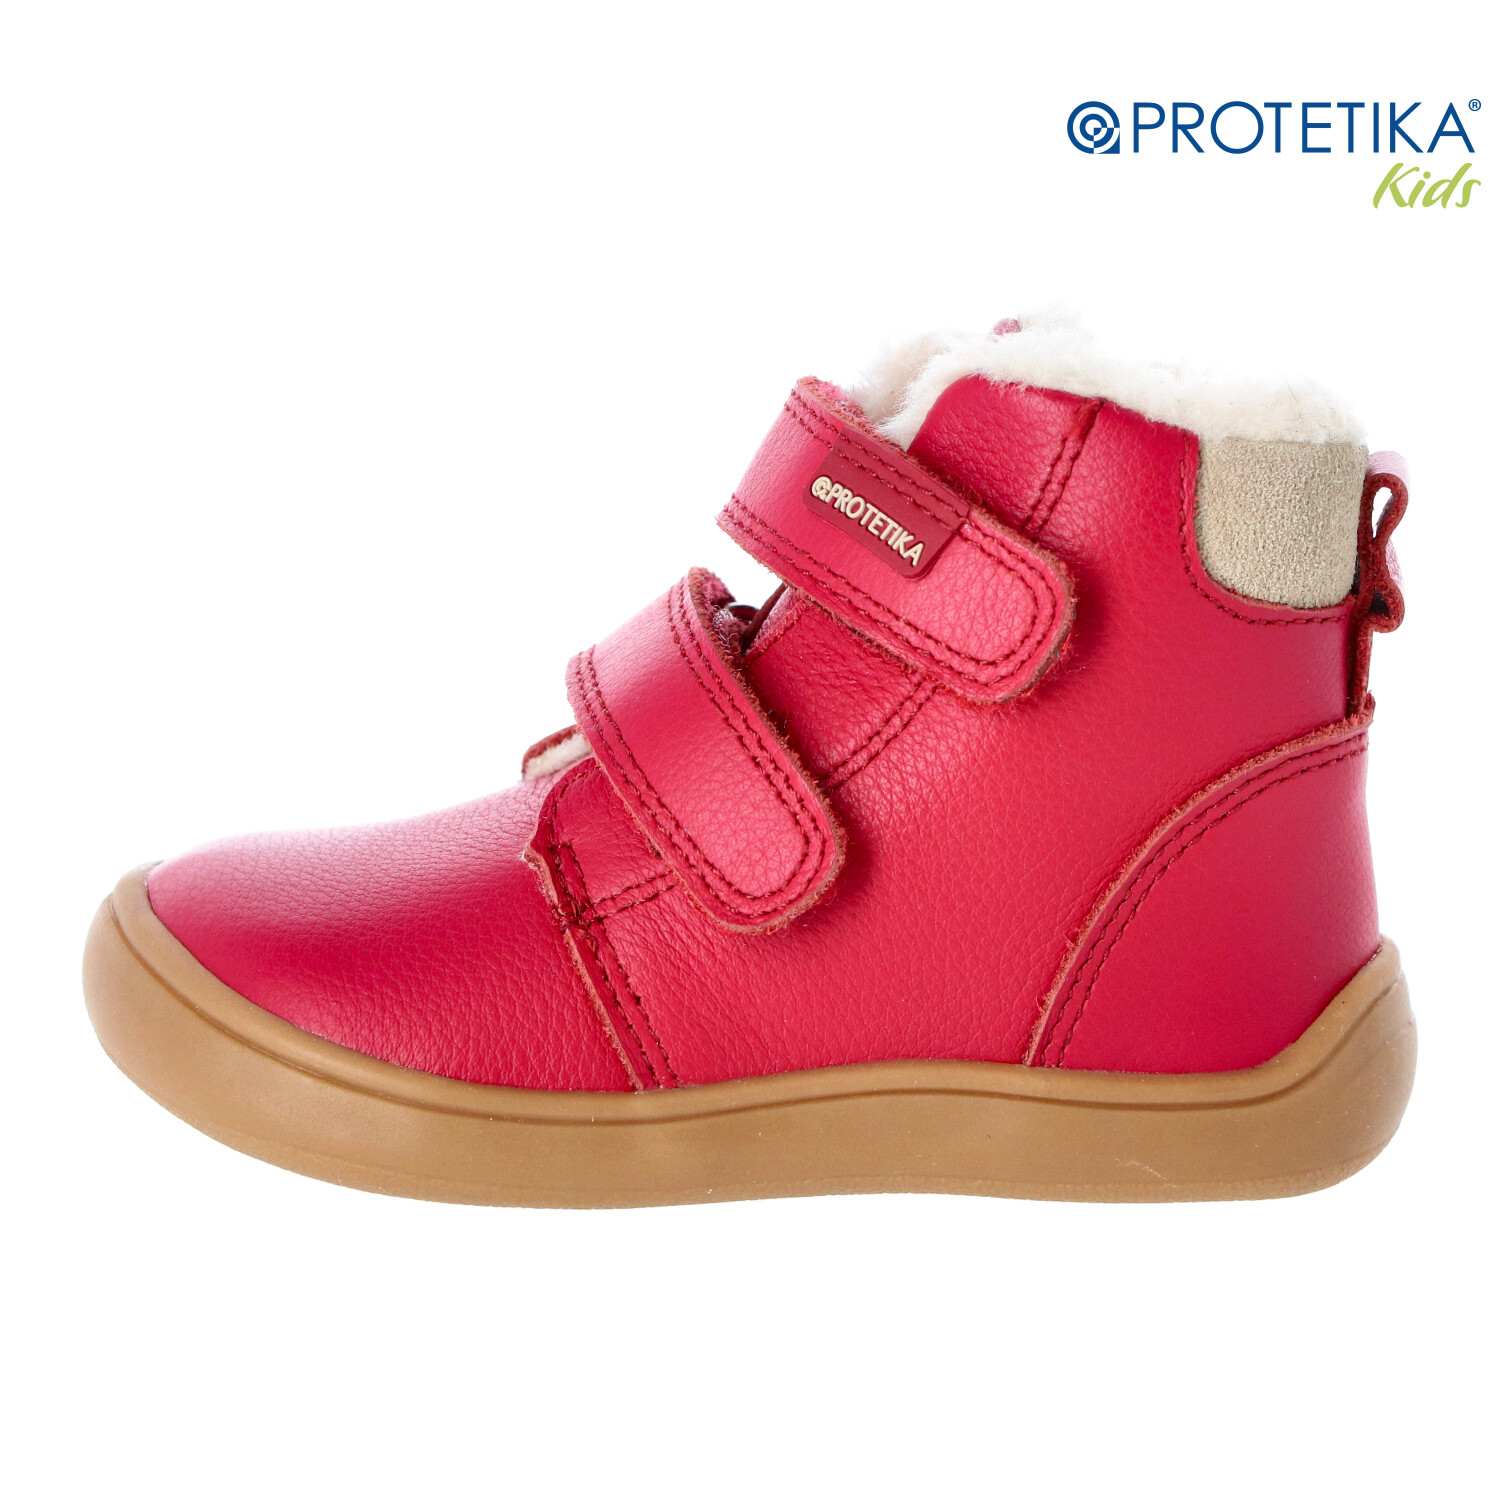 Protetika - zimné barefootové topánky DENY fuxia - zateplené kožušinkou